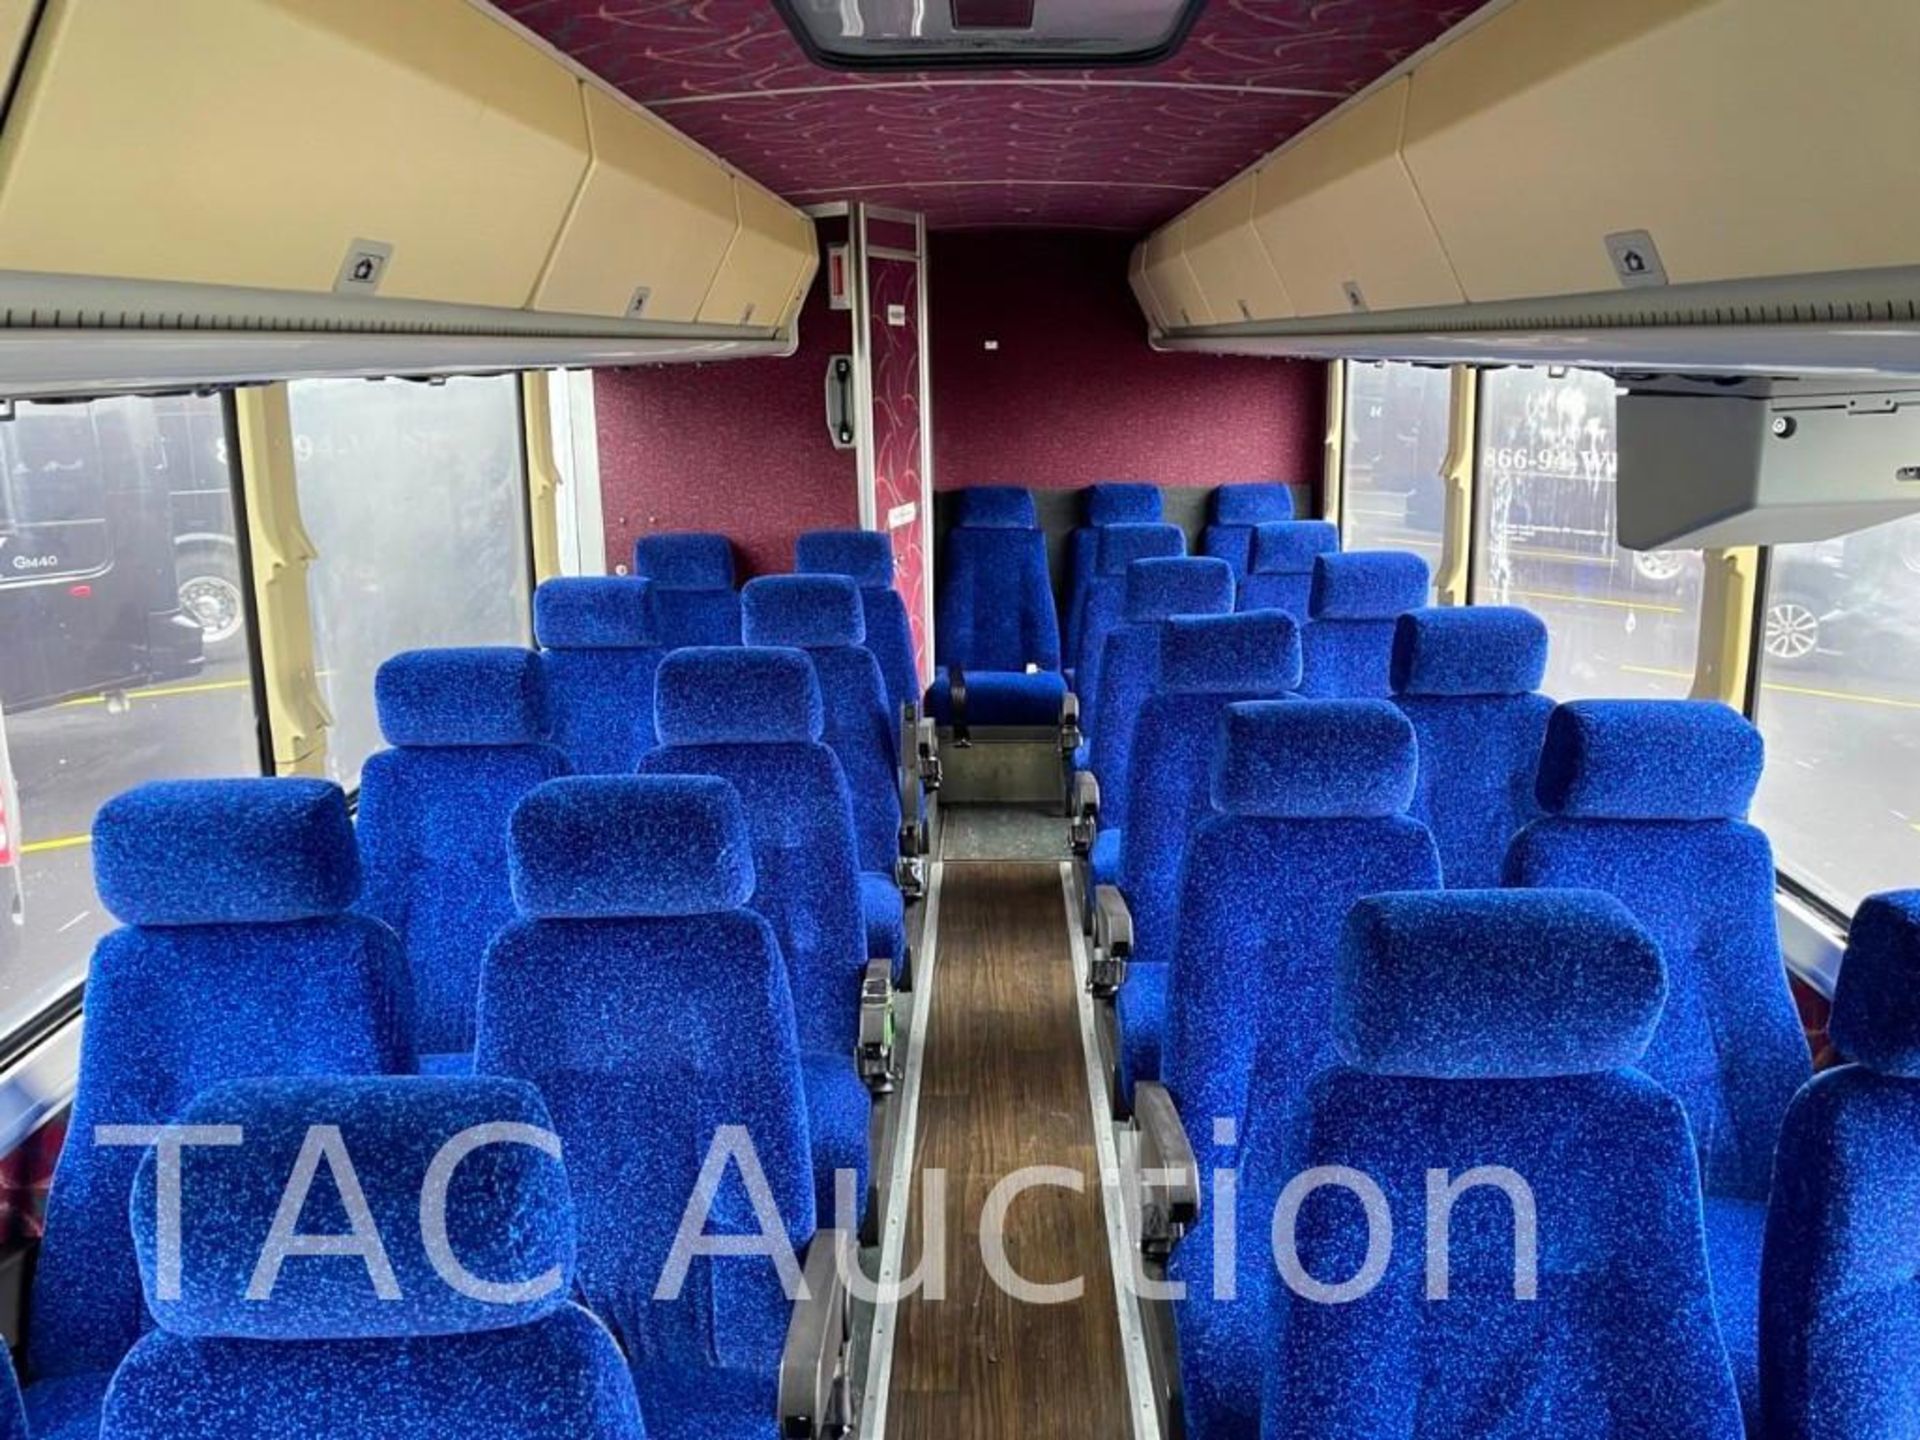 1997 MCI 102-DL3 (45) Passenger Coach Bus - Image 38 of 99